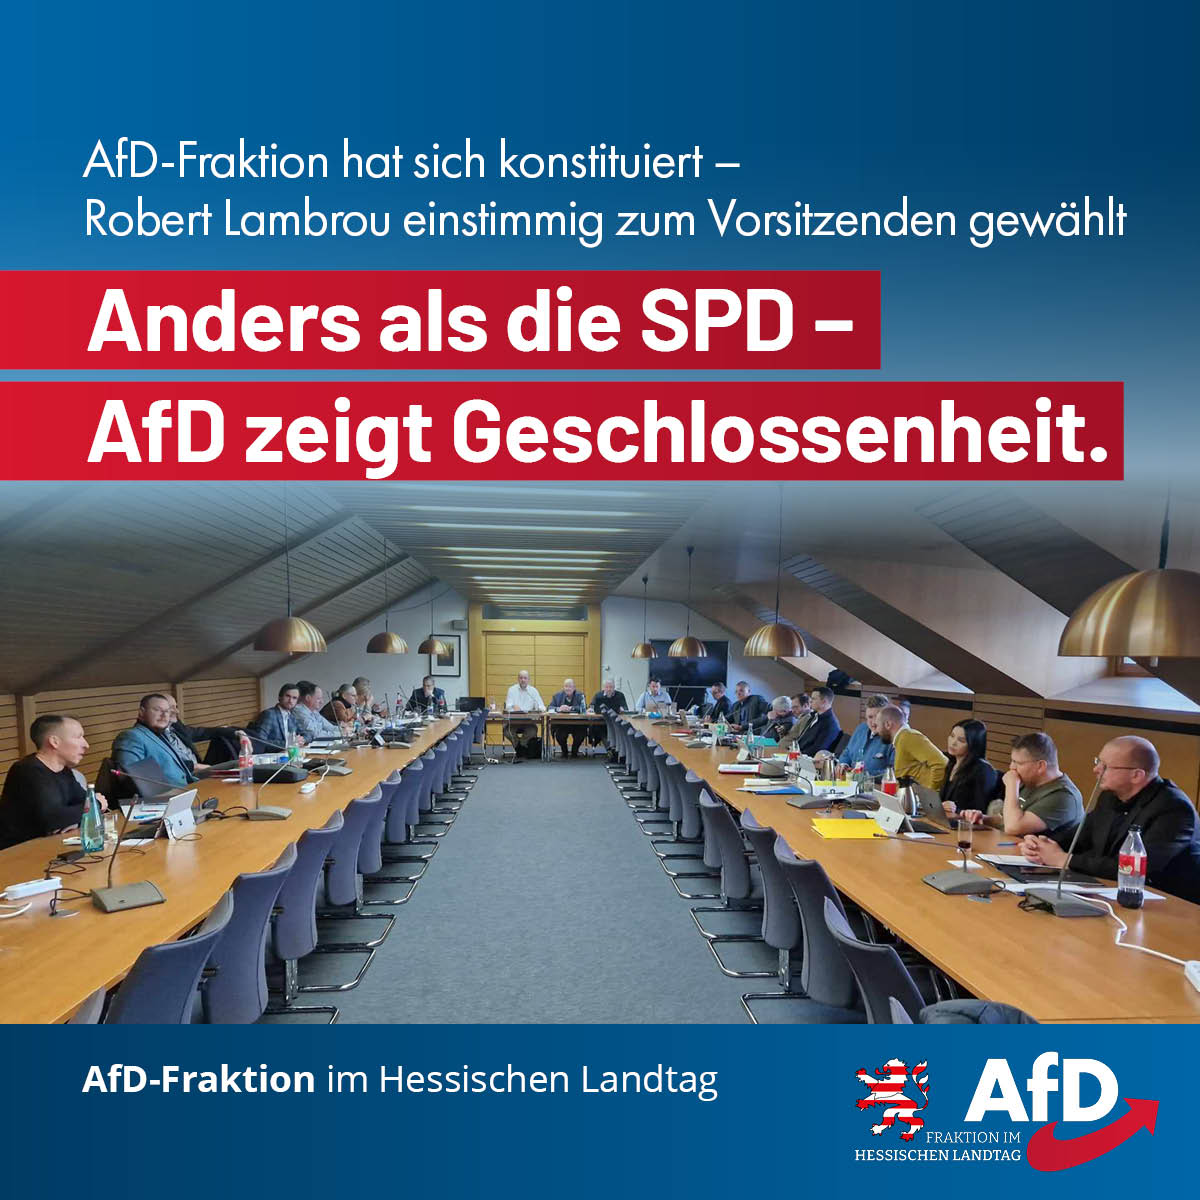 You are currently viewing AfD-Fraktion hat sich konstituiert – Robert Lambrou einstimmig zum Vorsitzenden gewählt